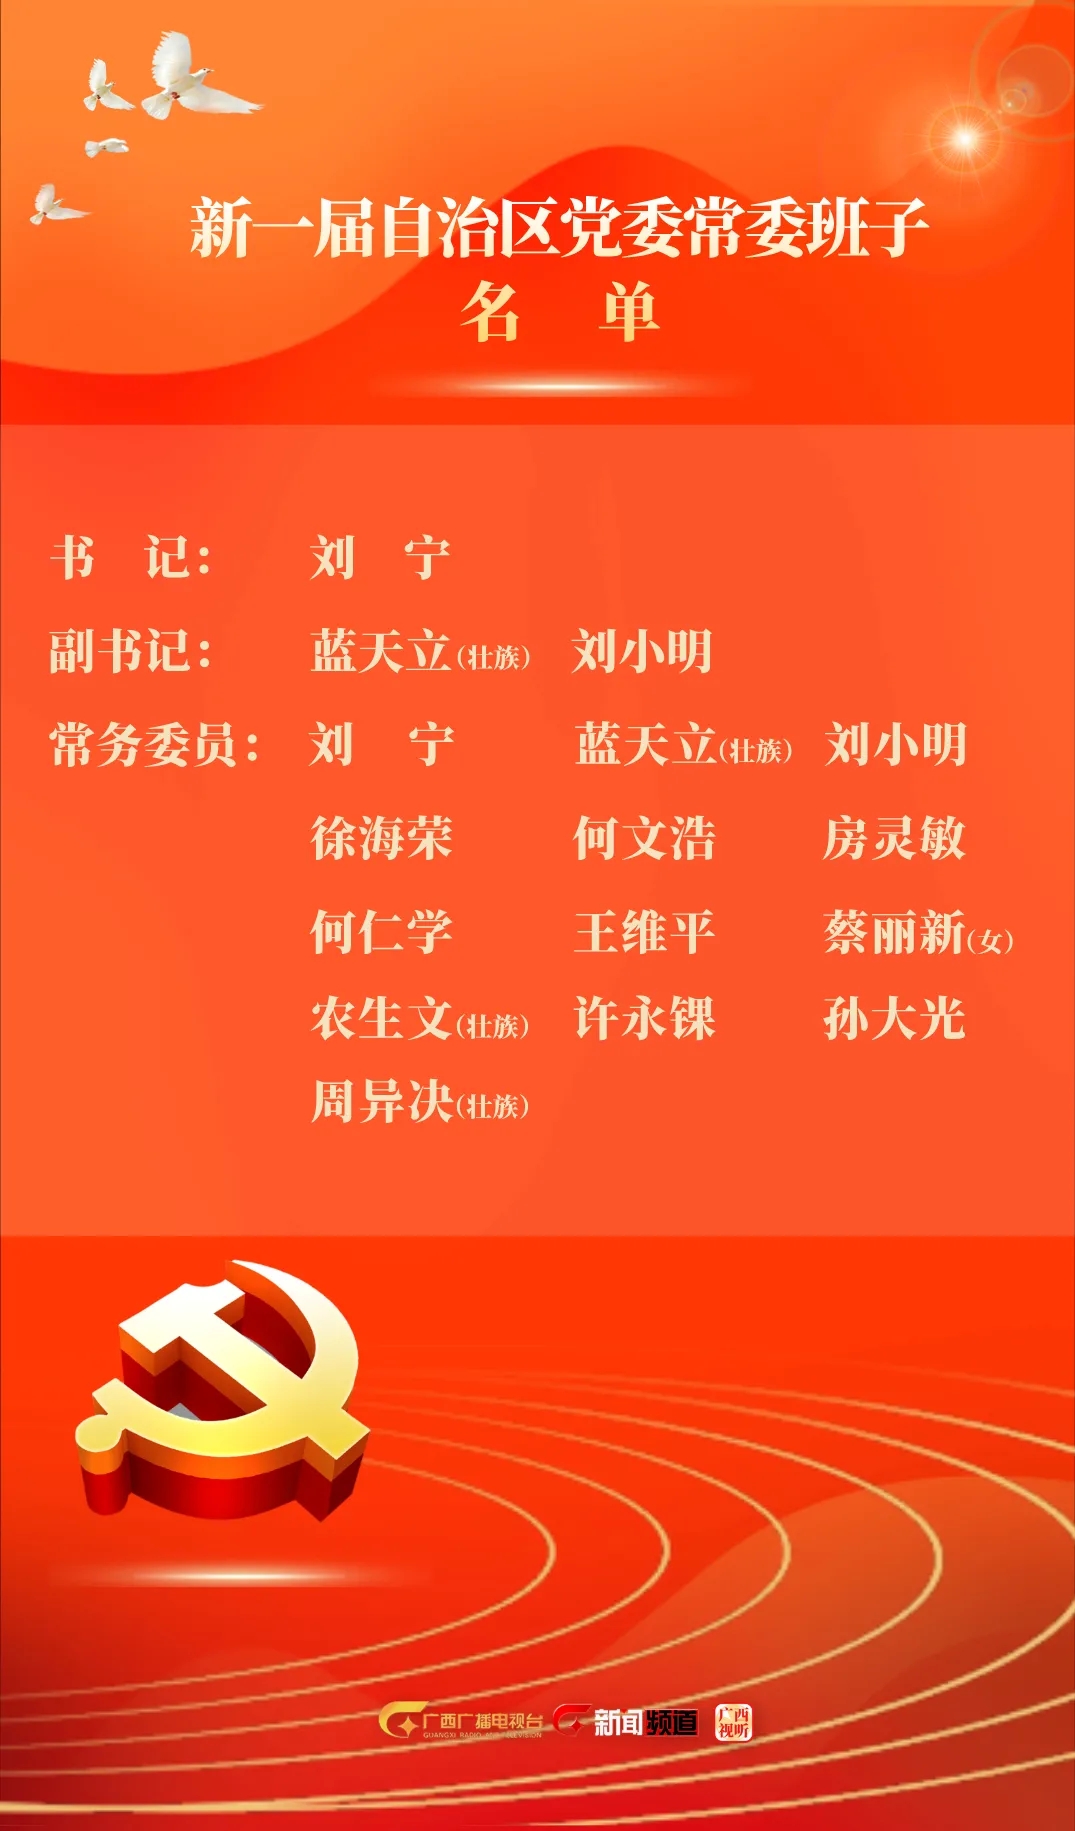 广西自治区党委常委名单及2021年最新排名 现任常委简历